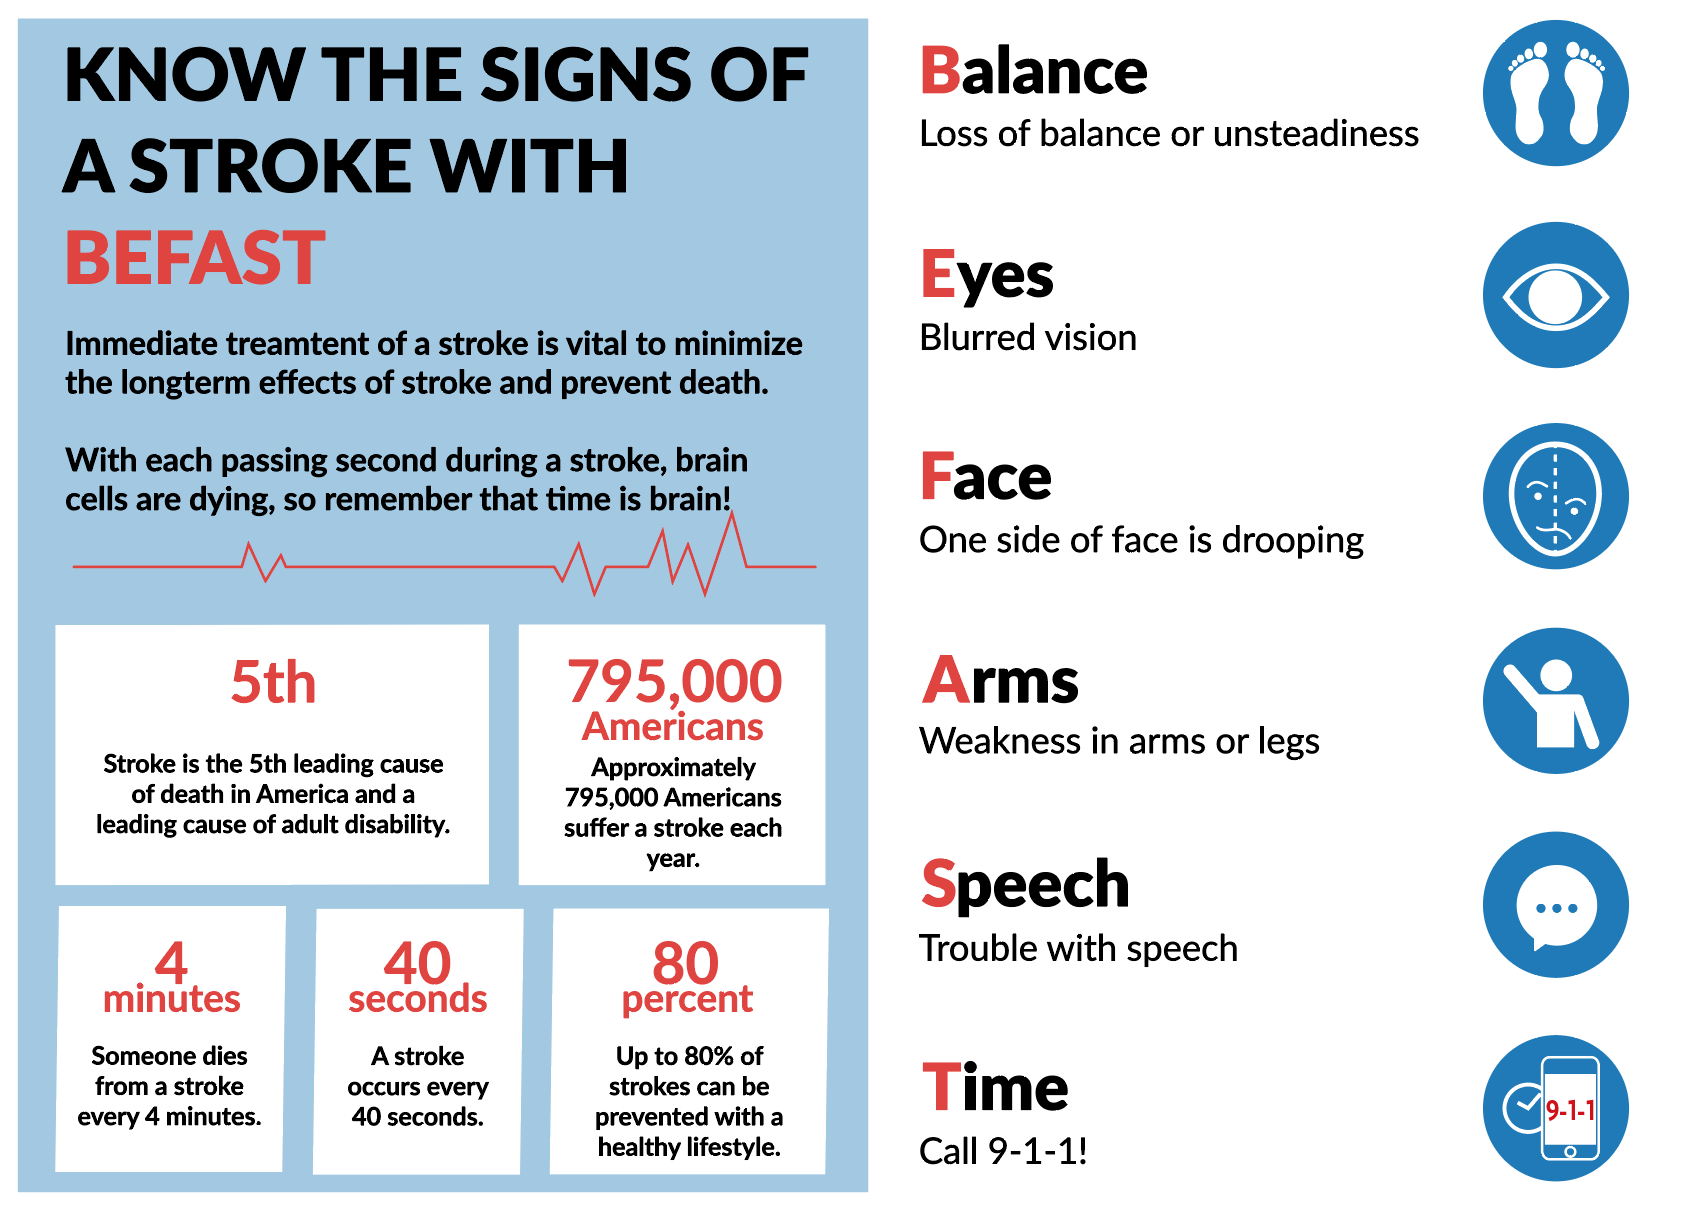 B.E.F.A.S.T. to identify stroke quickly